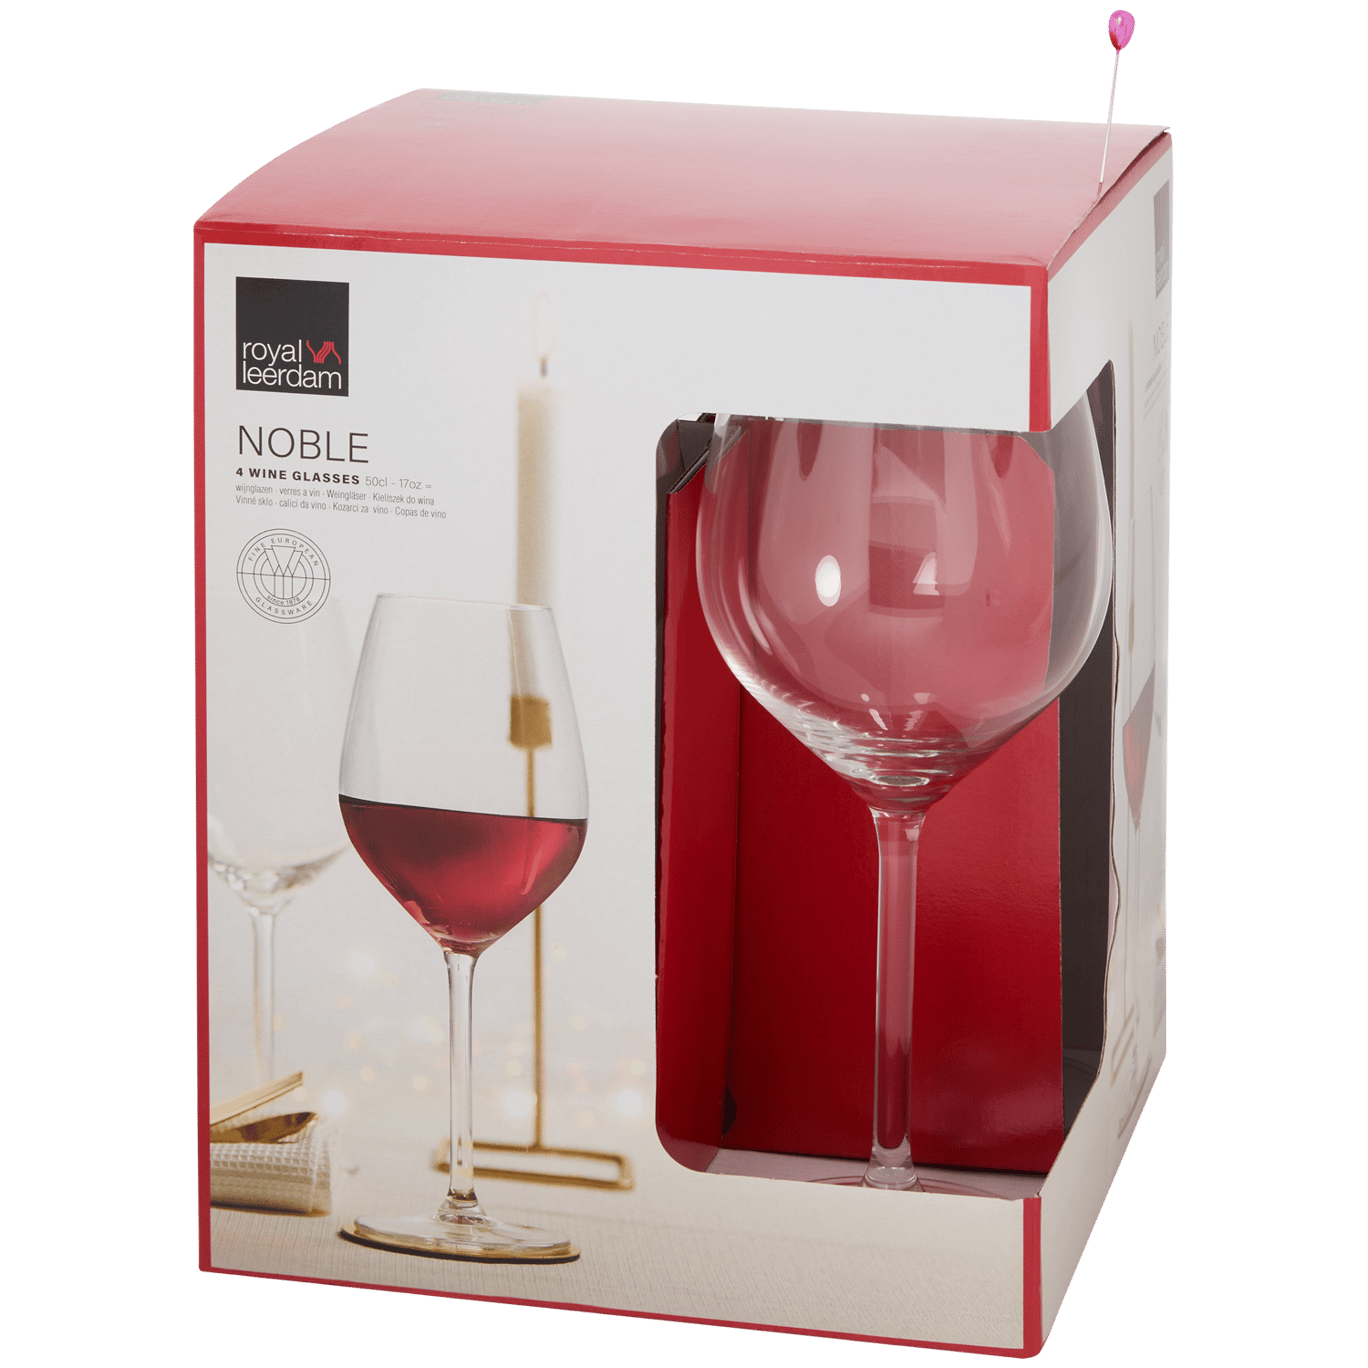 Copas de vino Royal Leerdam